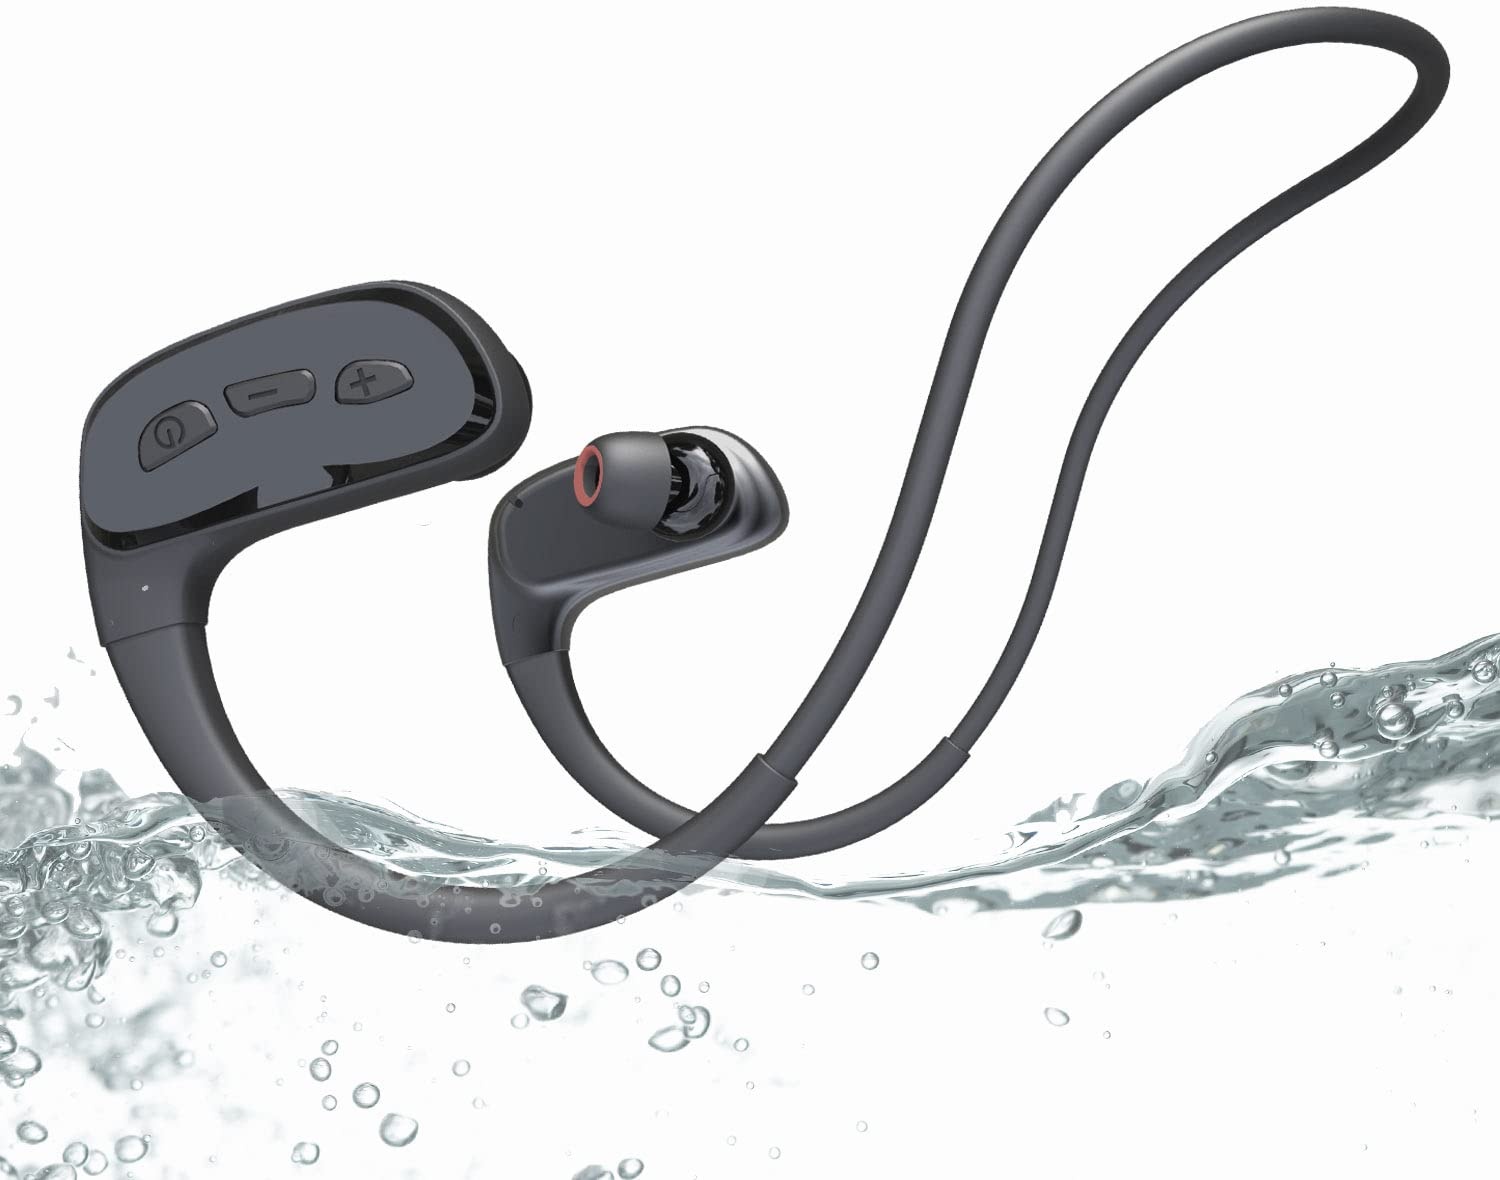 CYBORIS Kopfhörer Schwimmen, IPX8 wasserdichte Bluetooth Kopfhörer, Kabellos in Ear Kopfhörer Sport Kopfhörer mit Mp3 Player 32GB Speicher, Eingebauter Bone Conduction Lautsprecher, EQ-Schaltfunktion